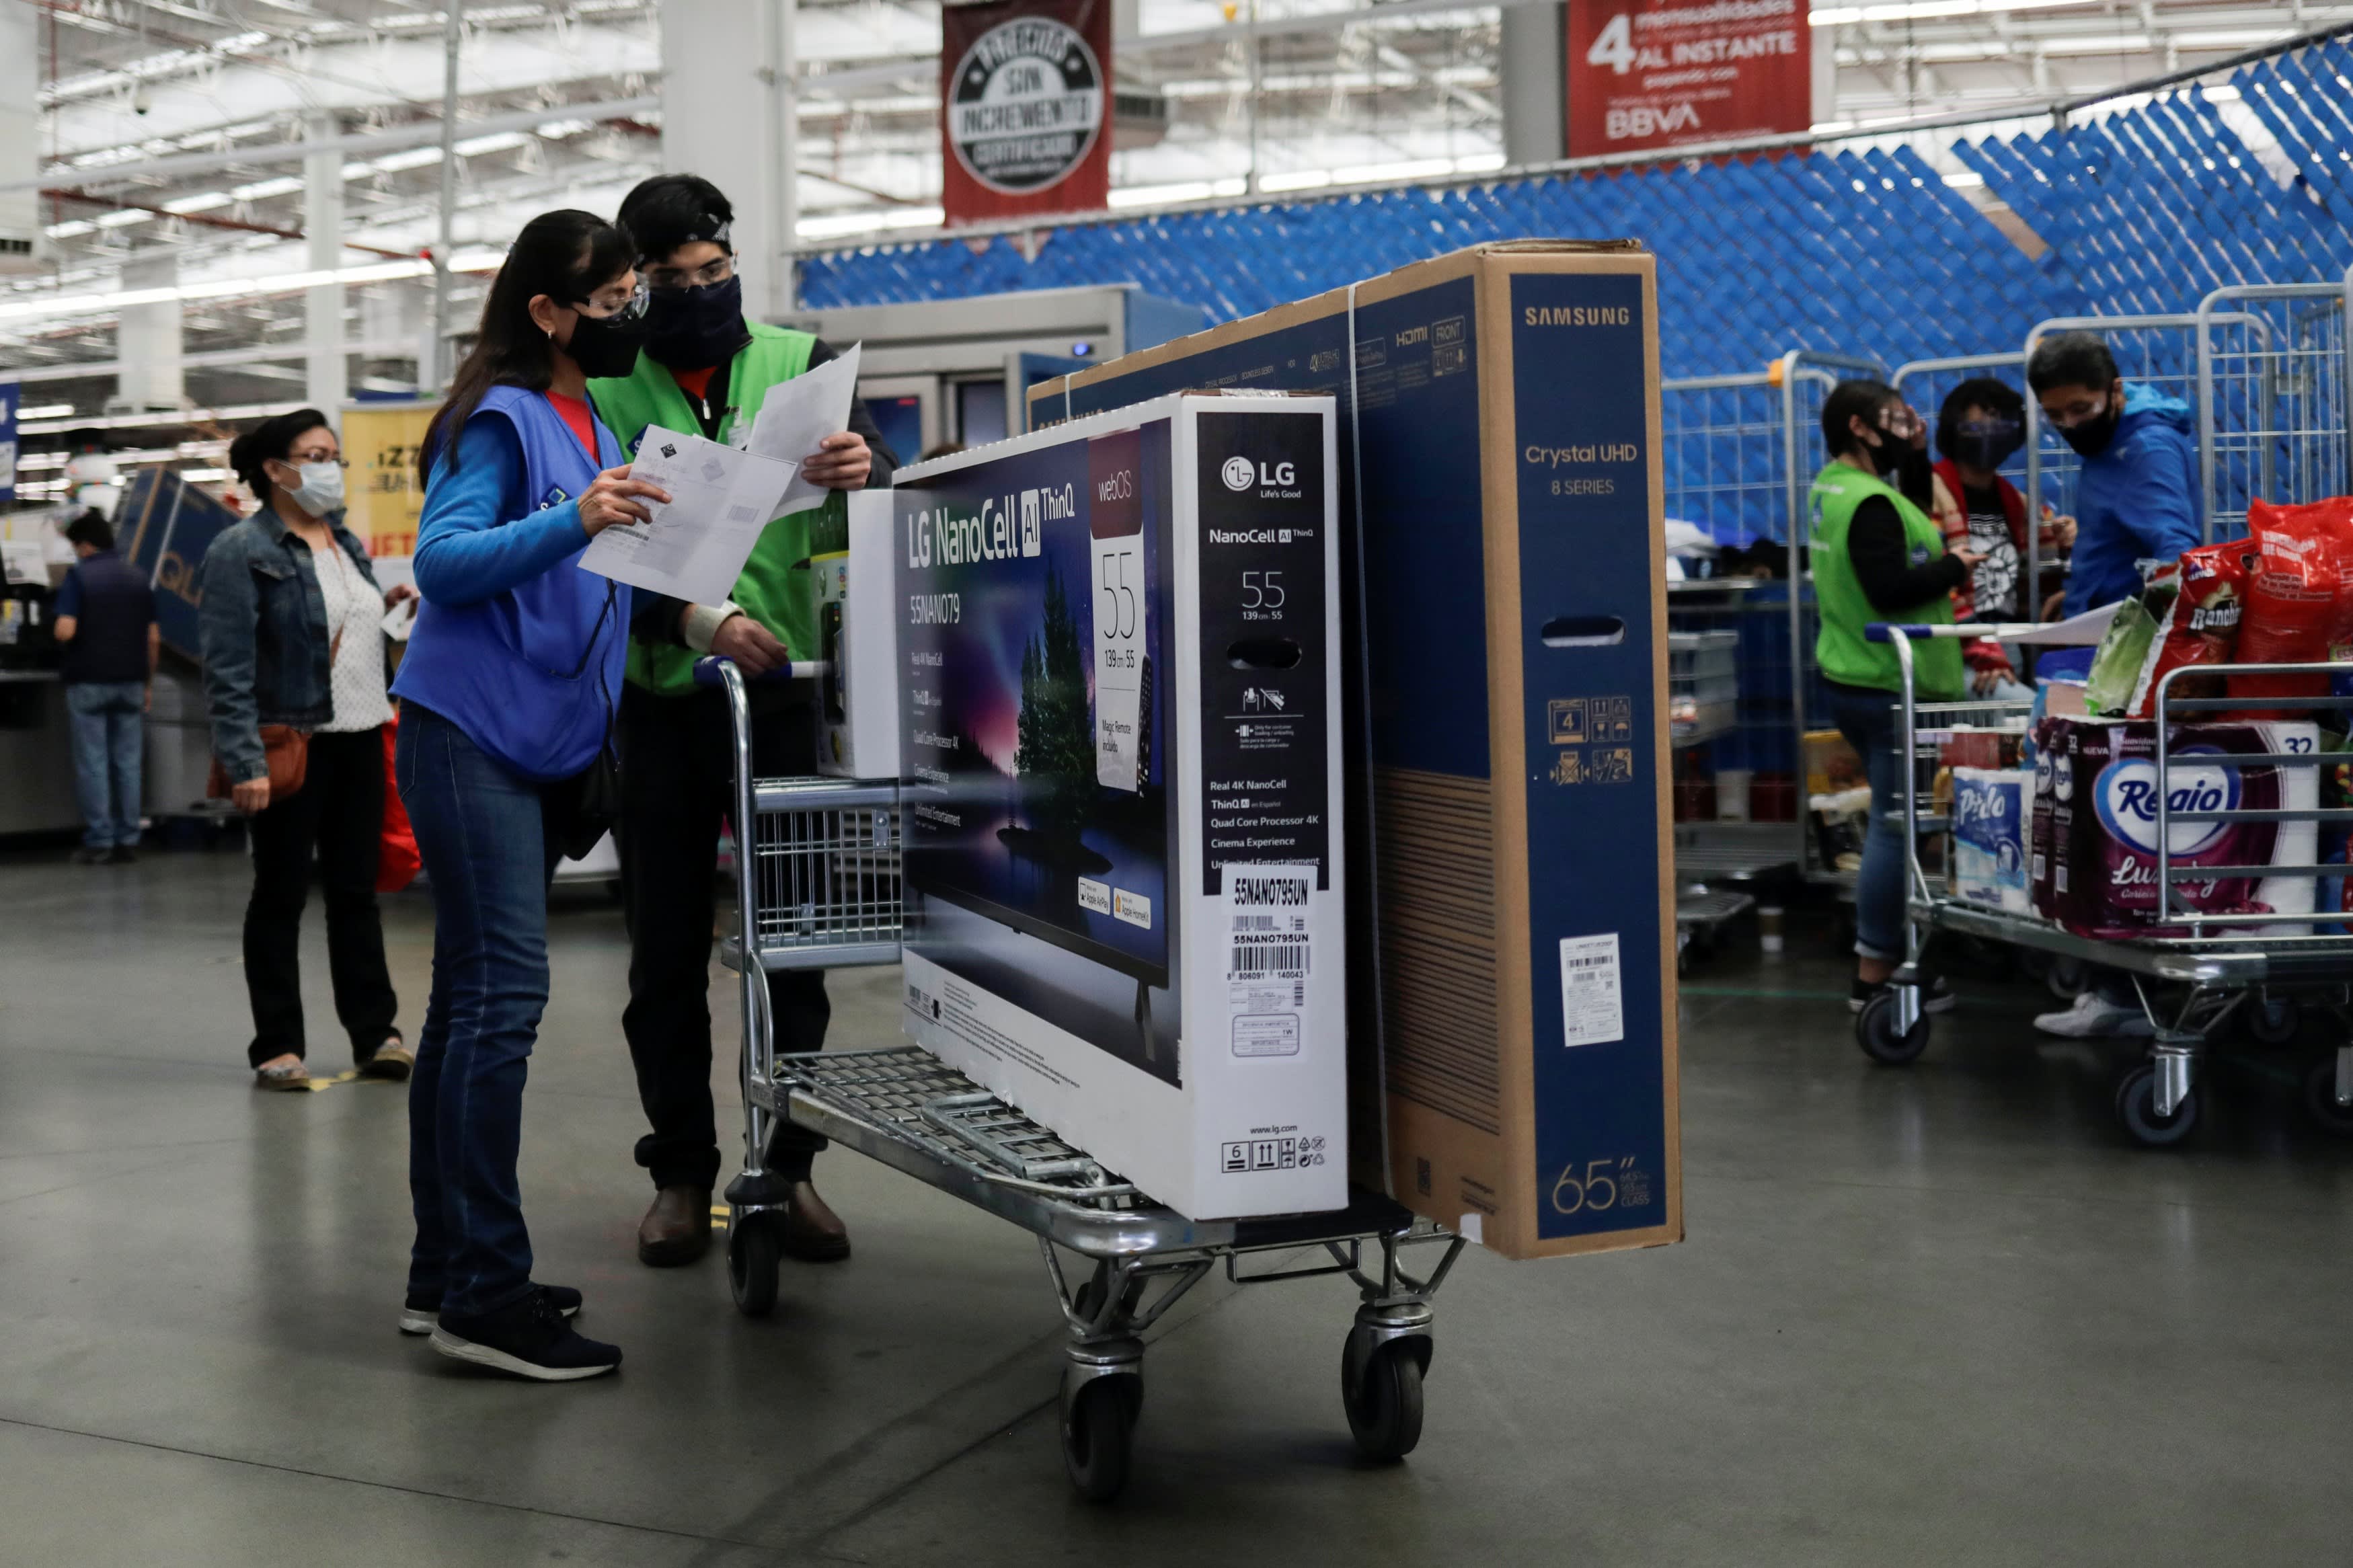 Walmart's Sam's Club raises minimum wage to $15 amid tight labor market